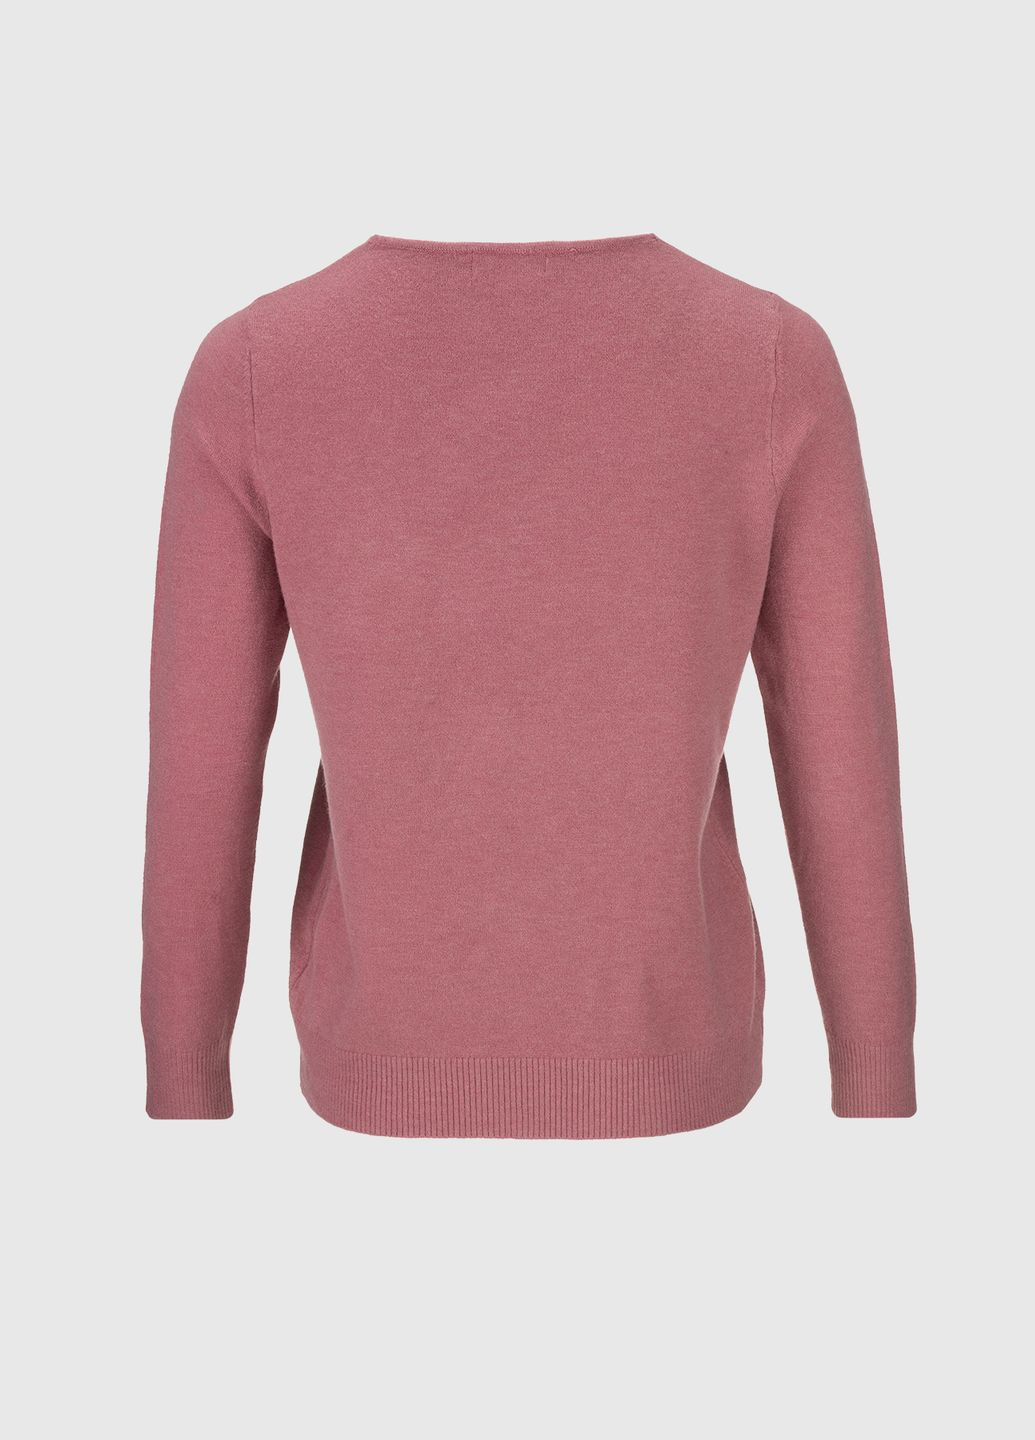 Малиновый демисезонный пуловер пуловер No Brand